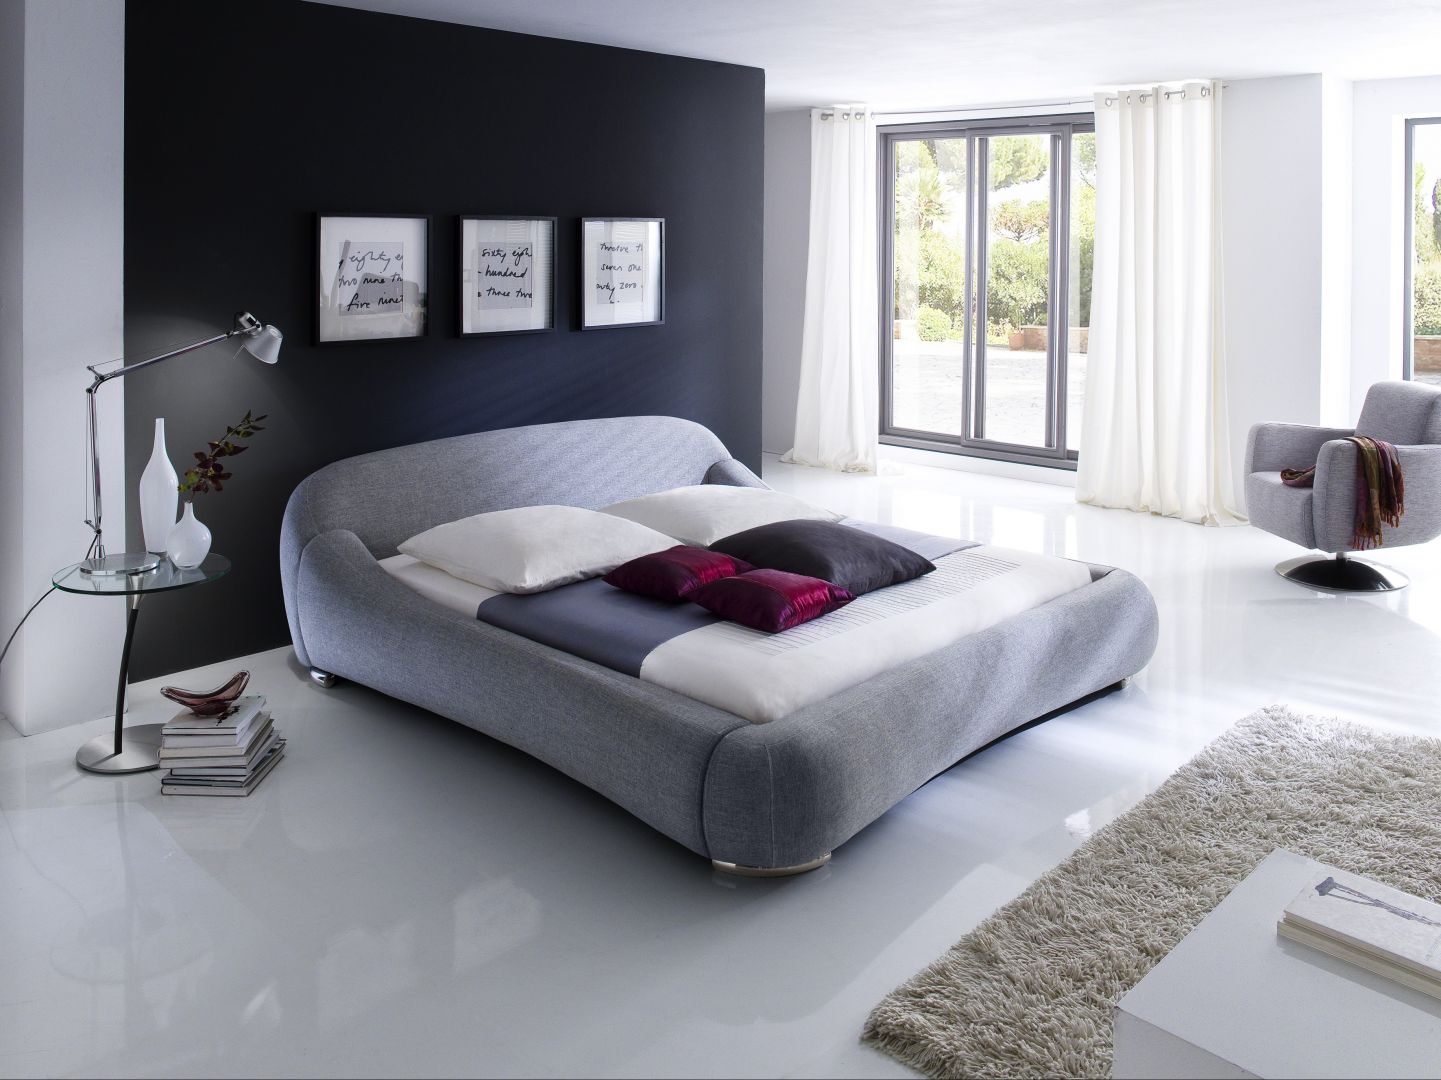 Łóżko Paloma, tapicerowane wysokiej jakości tkaniną. Dzięki swoim nowoczesnym, opływowym kształtom mebel ten stanowić będzie wyrazisty akcent w pomieszczeniu. Fot. MC Akcent